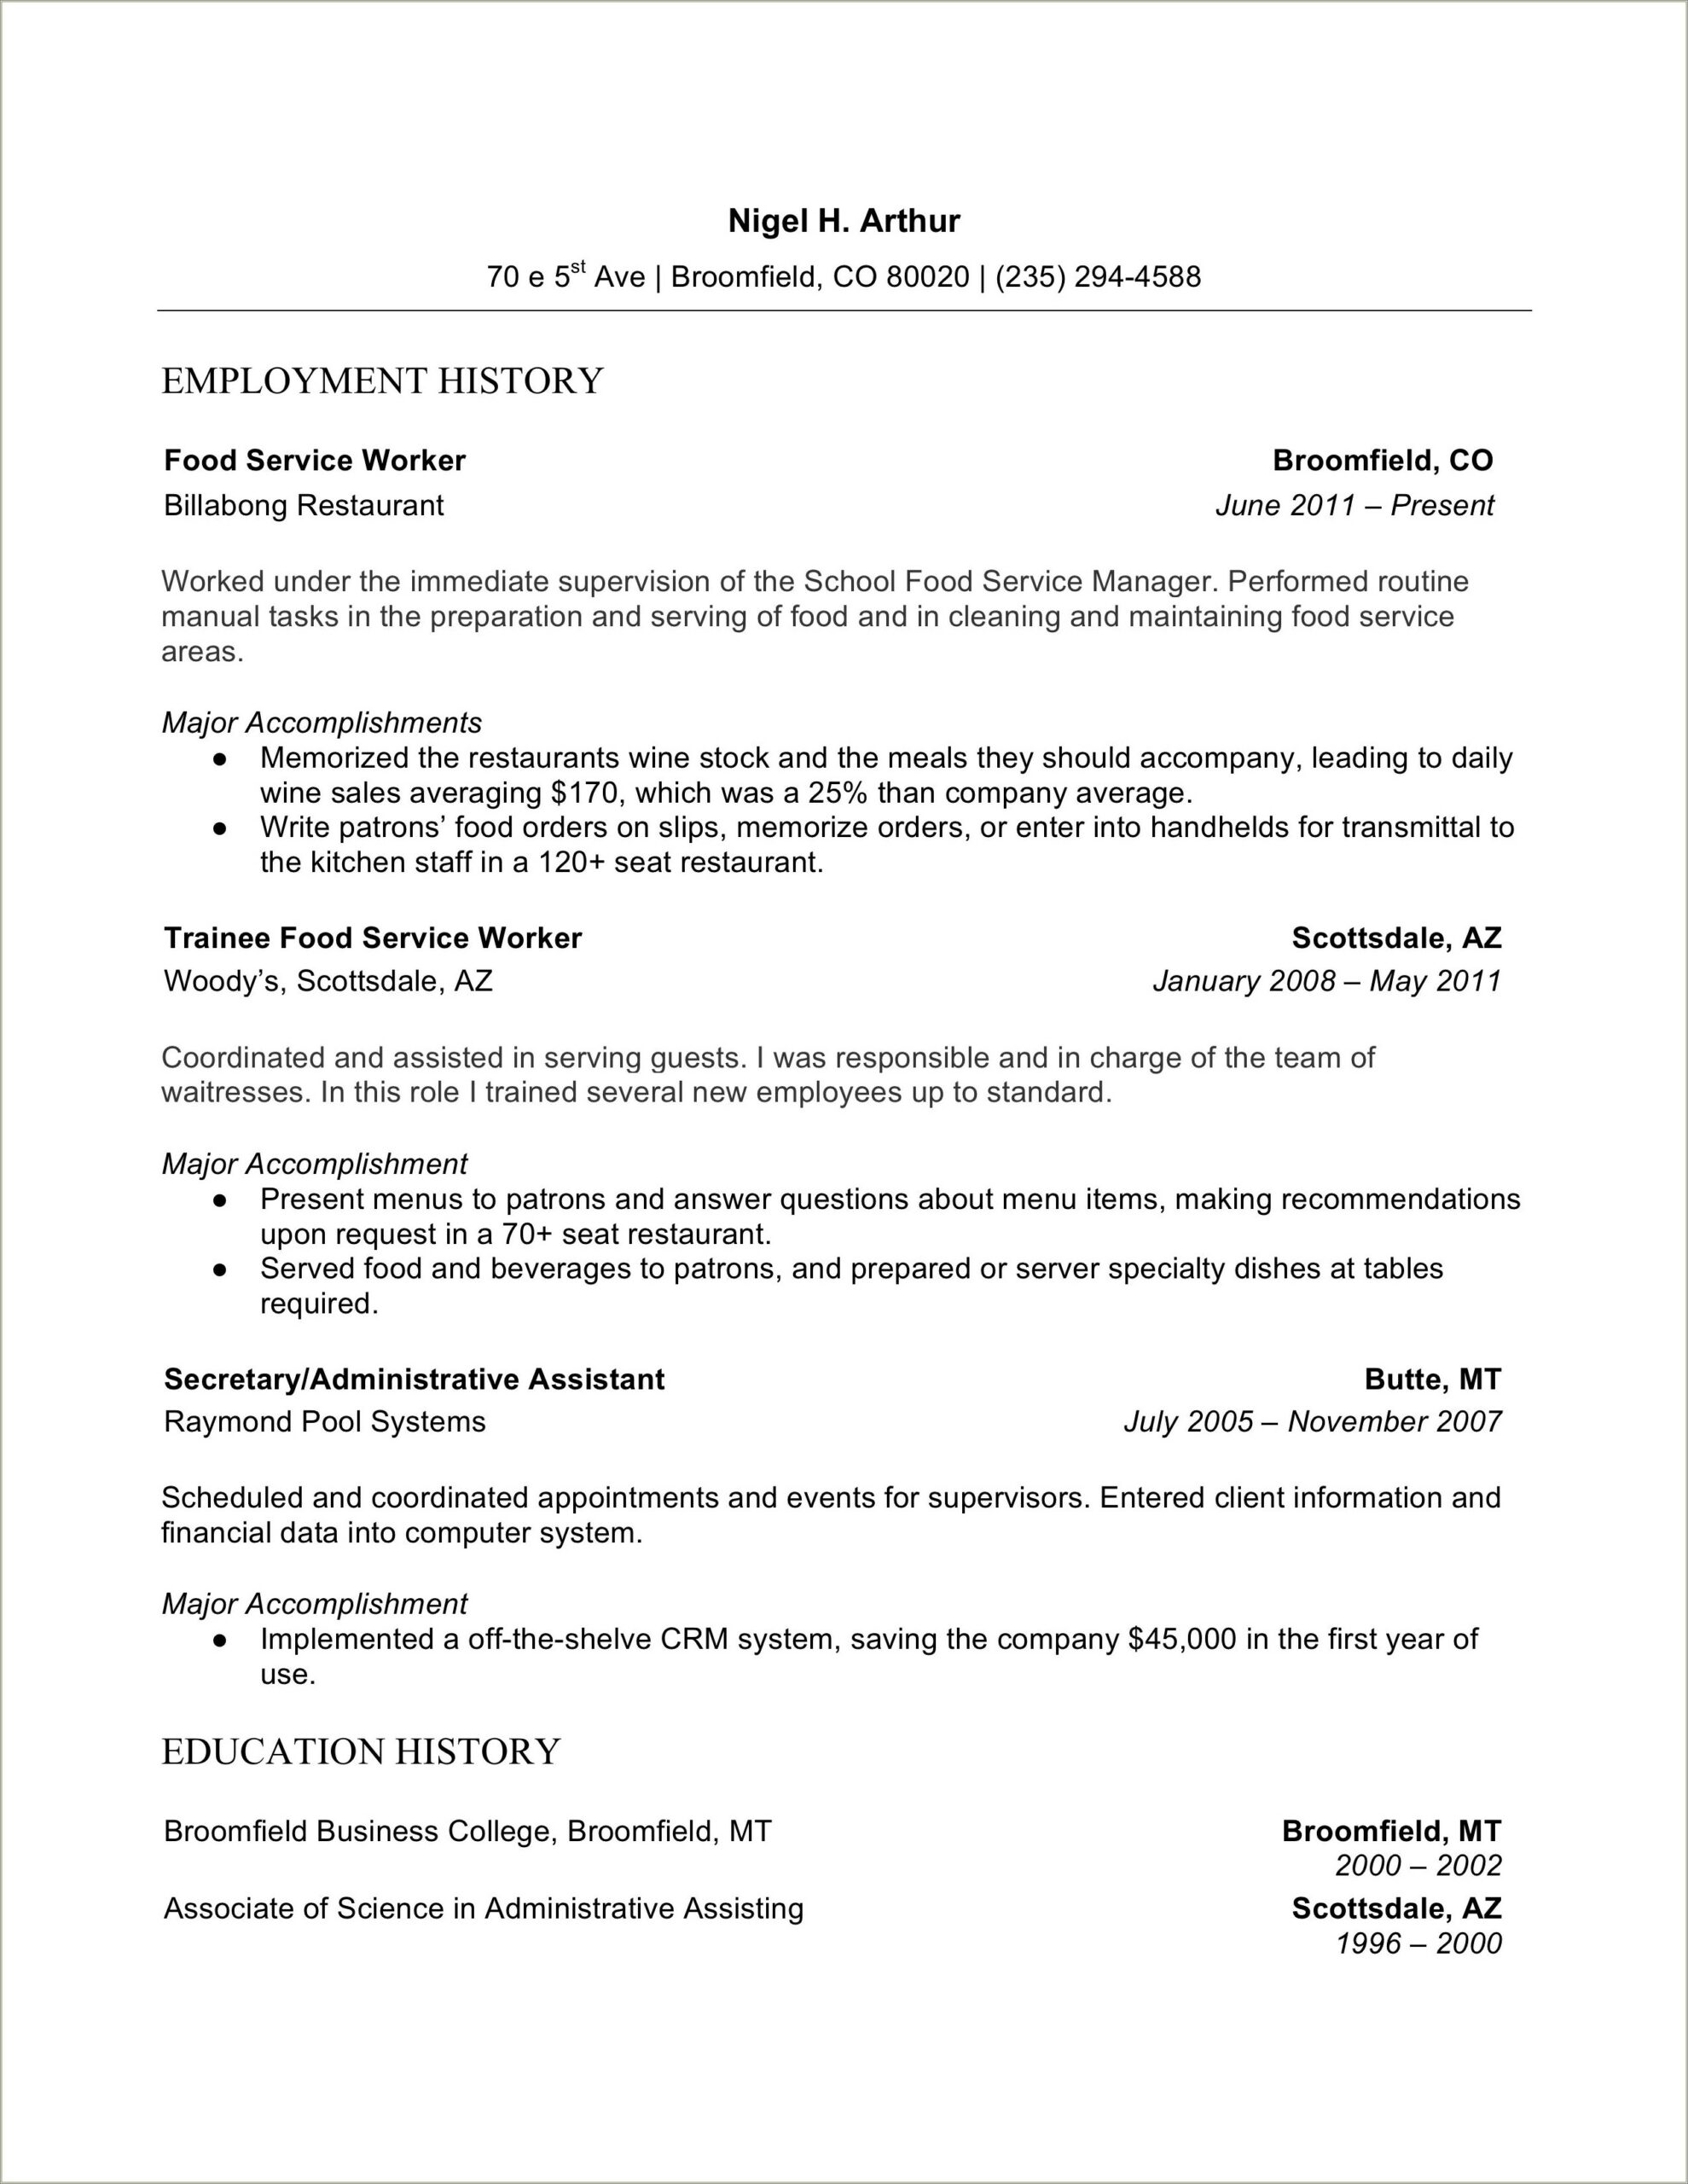 Direct Service Worker Job Description For Resume